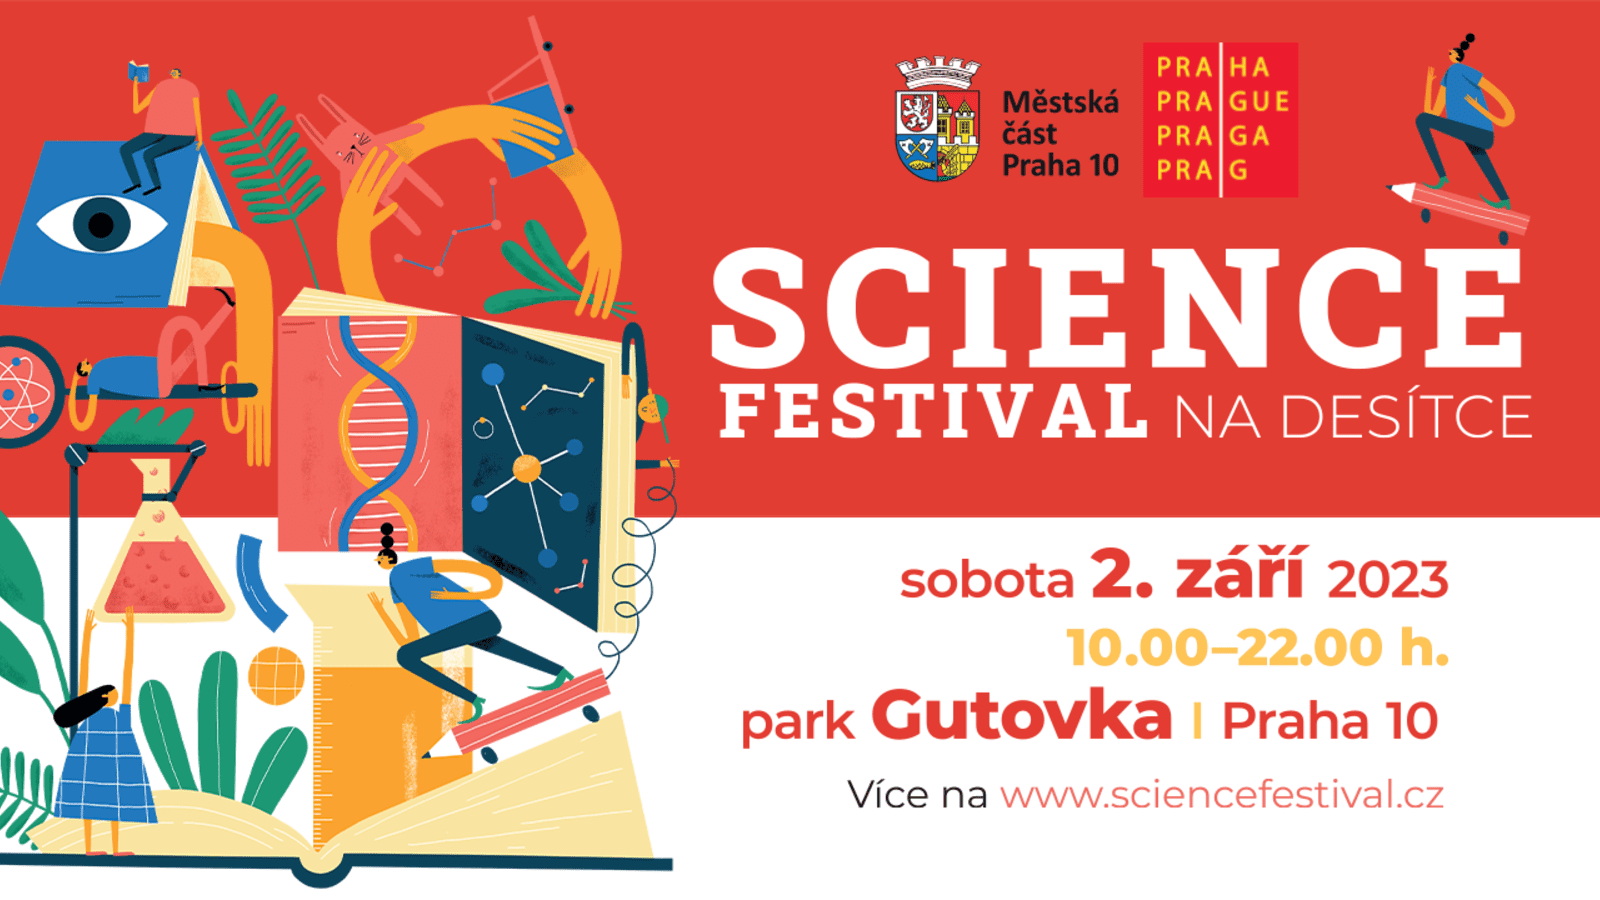 2 сентября в Праге пройдет Science Festival